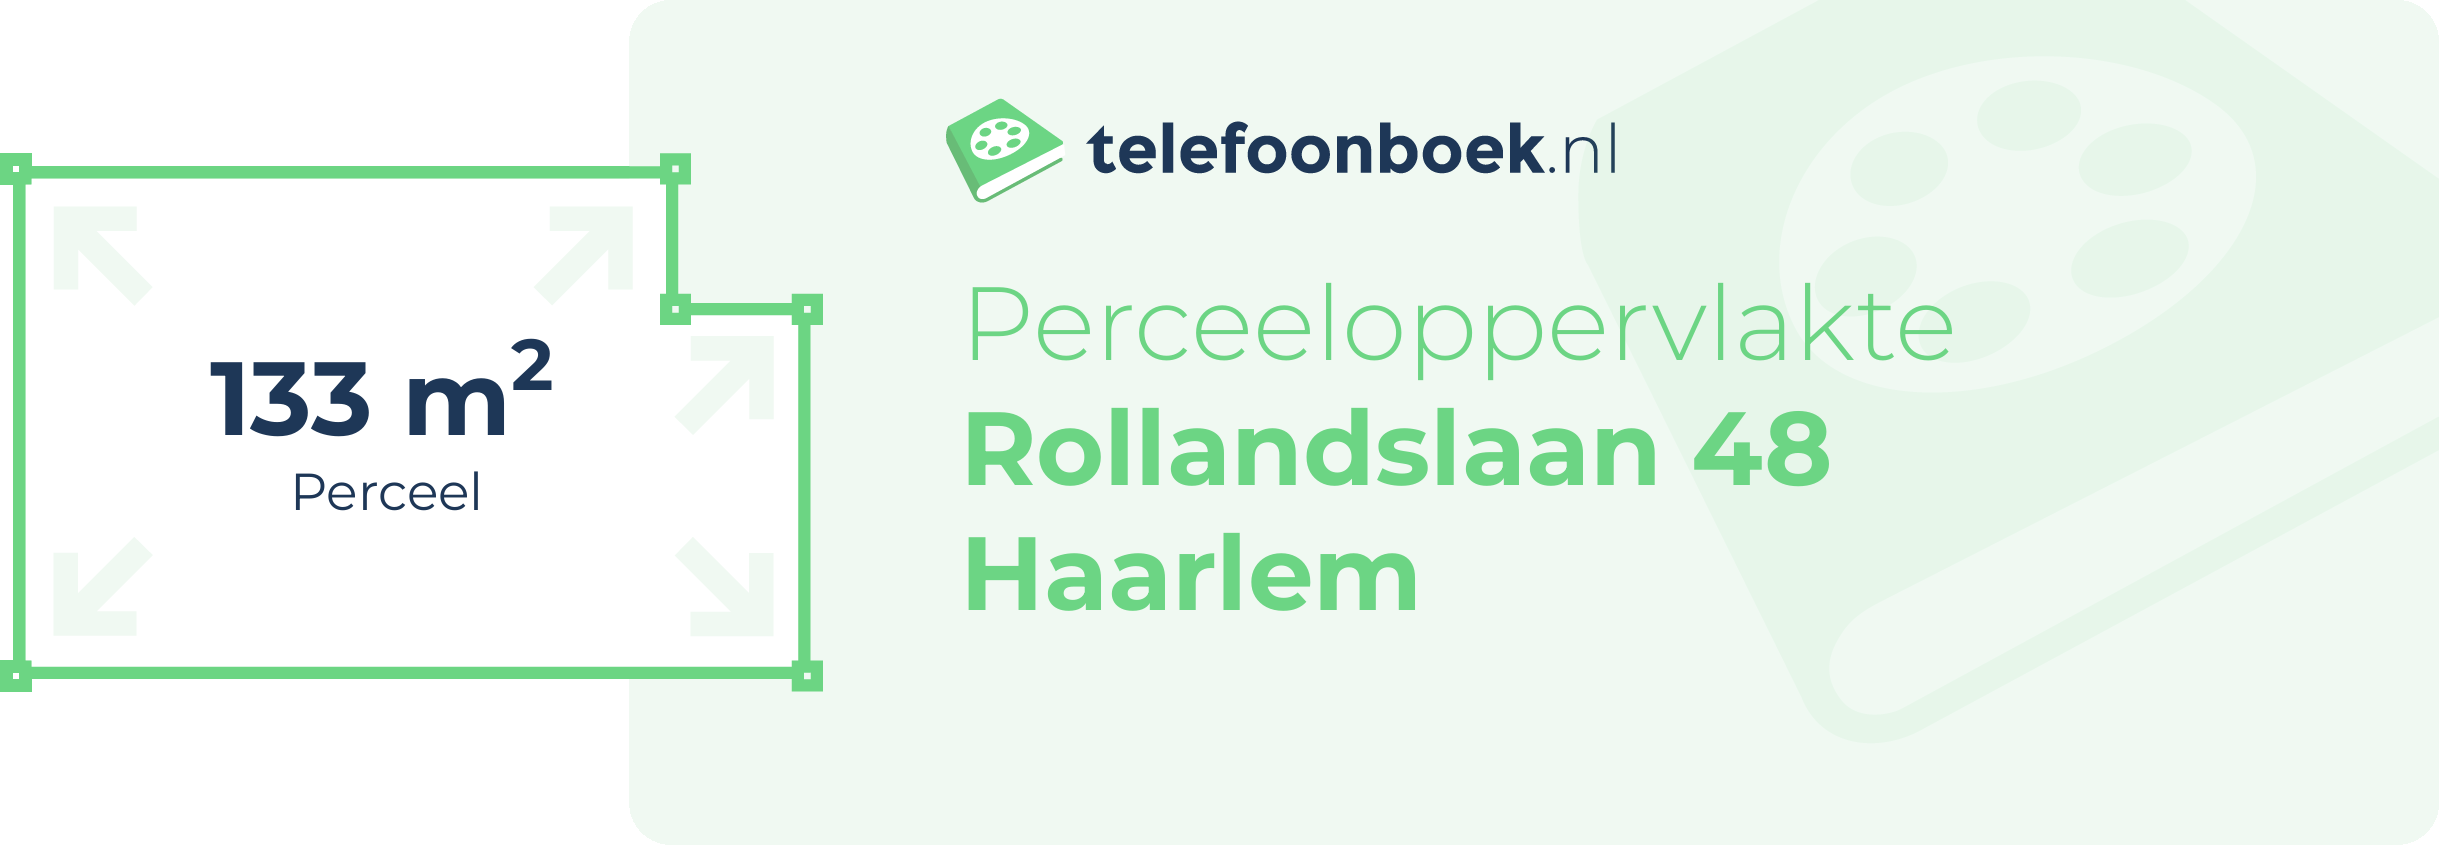 Perceeloppervlakte Rollandslaan 48 Haarlem